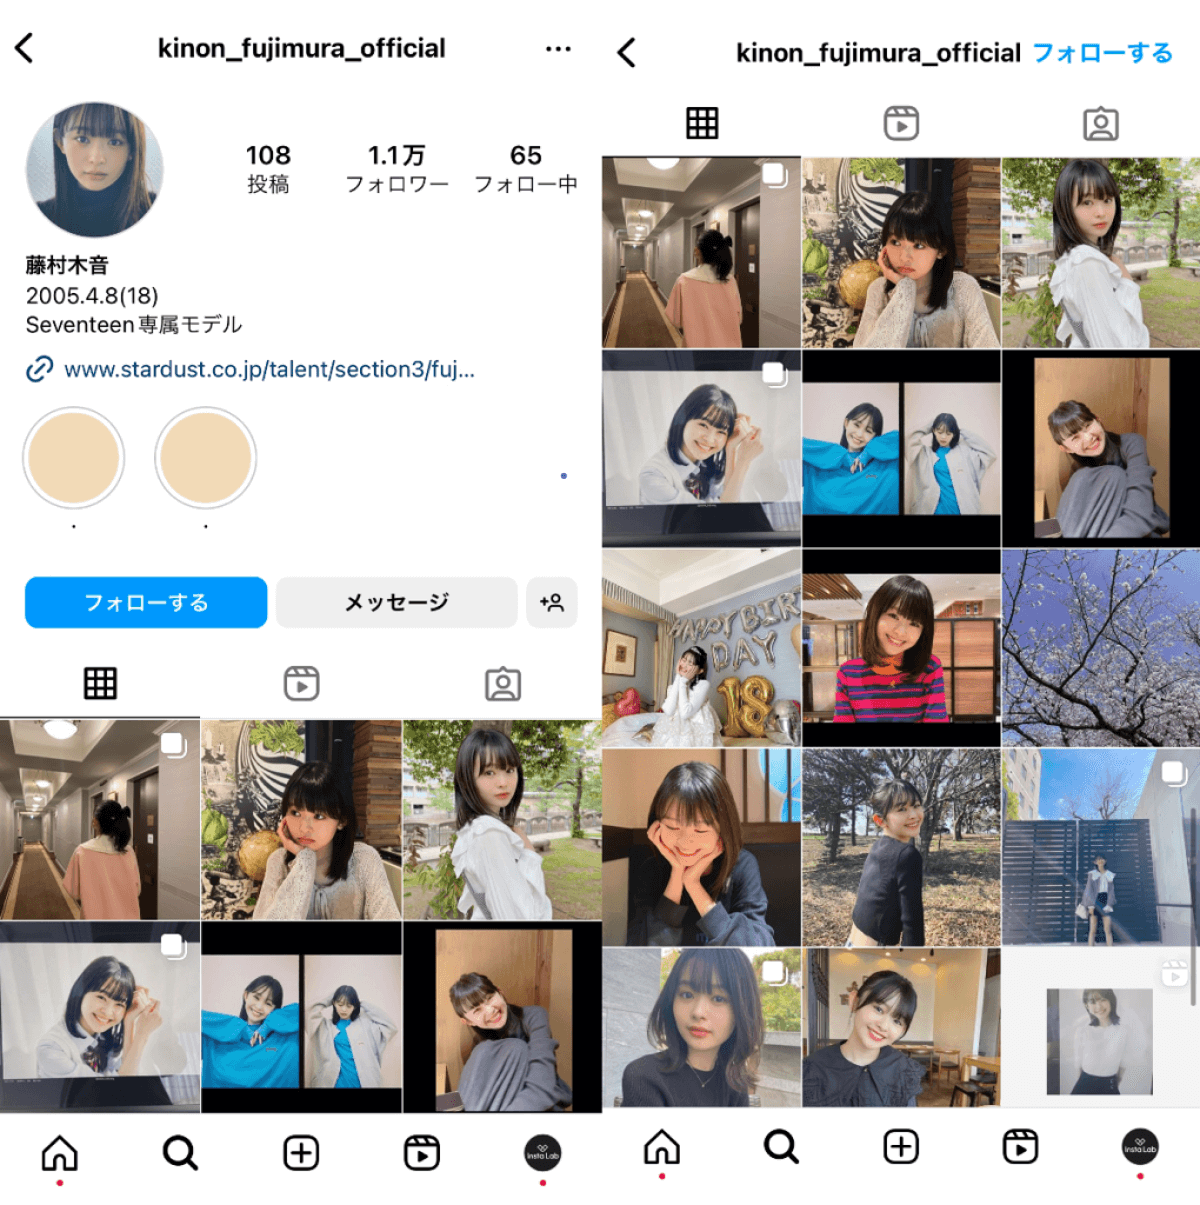 instagram-account-kinon-fujimura-official